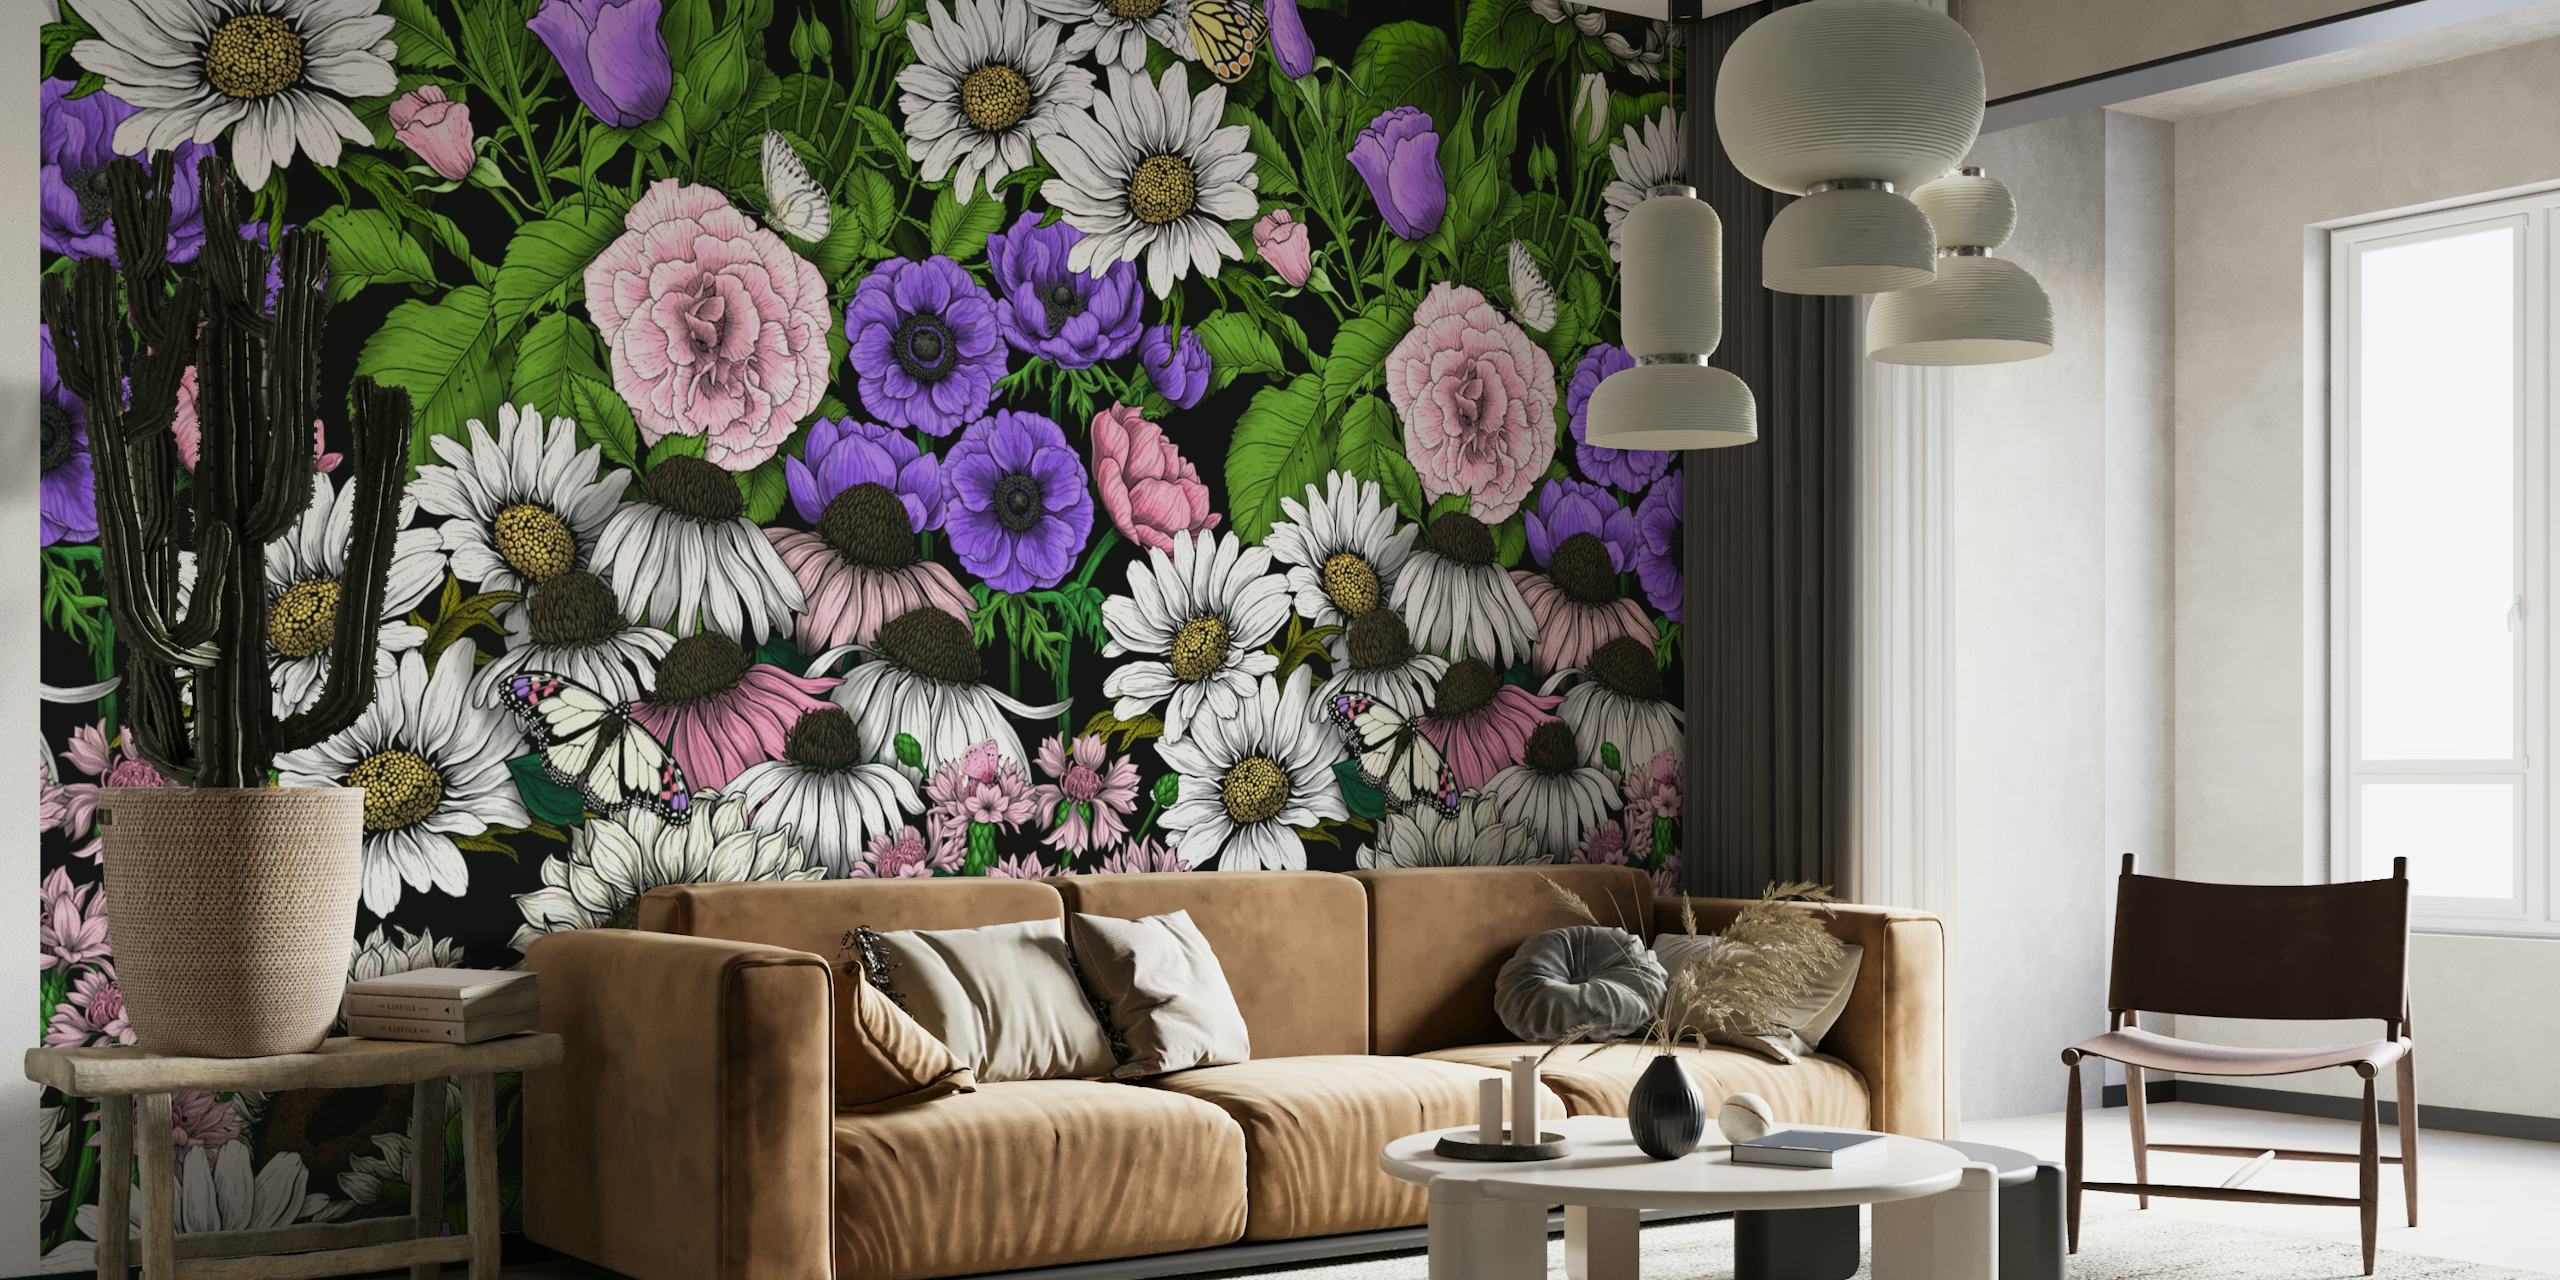 Nærbillede af 'Garden Bedding - Collection 2' vægmaleri, der viser farverige blomster og grønne blade mønster